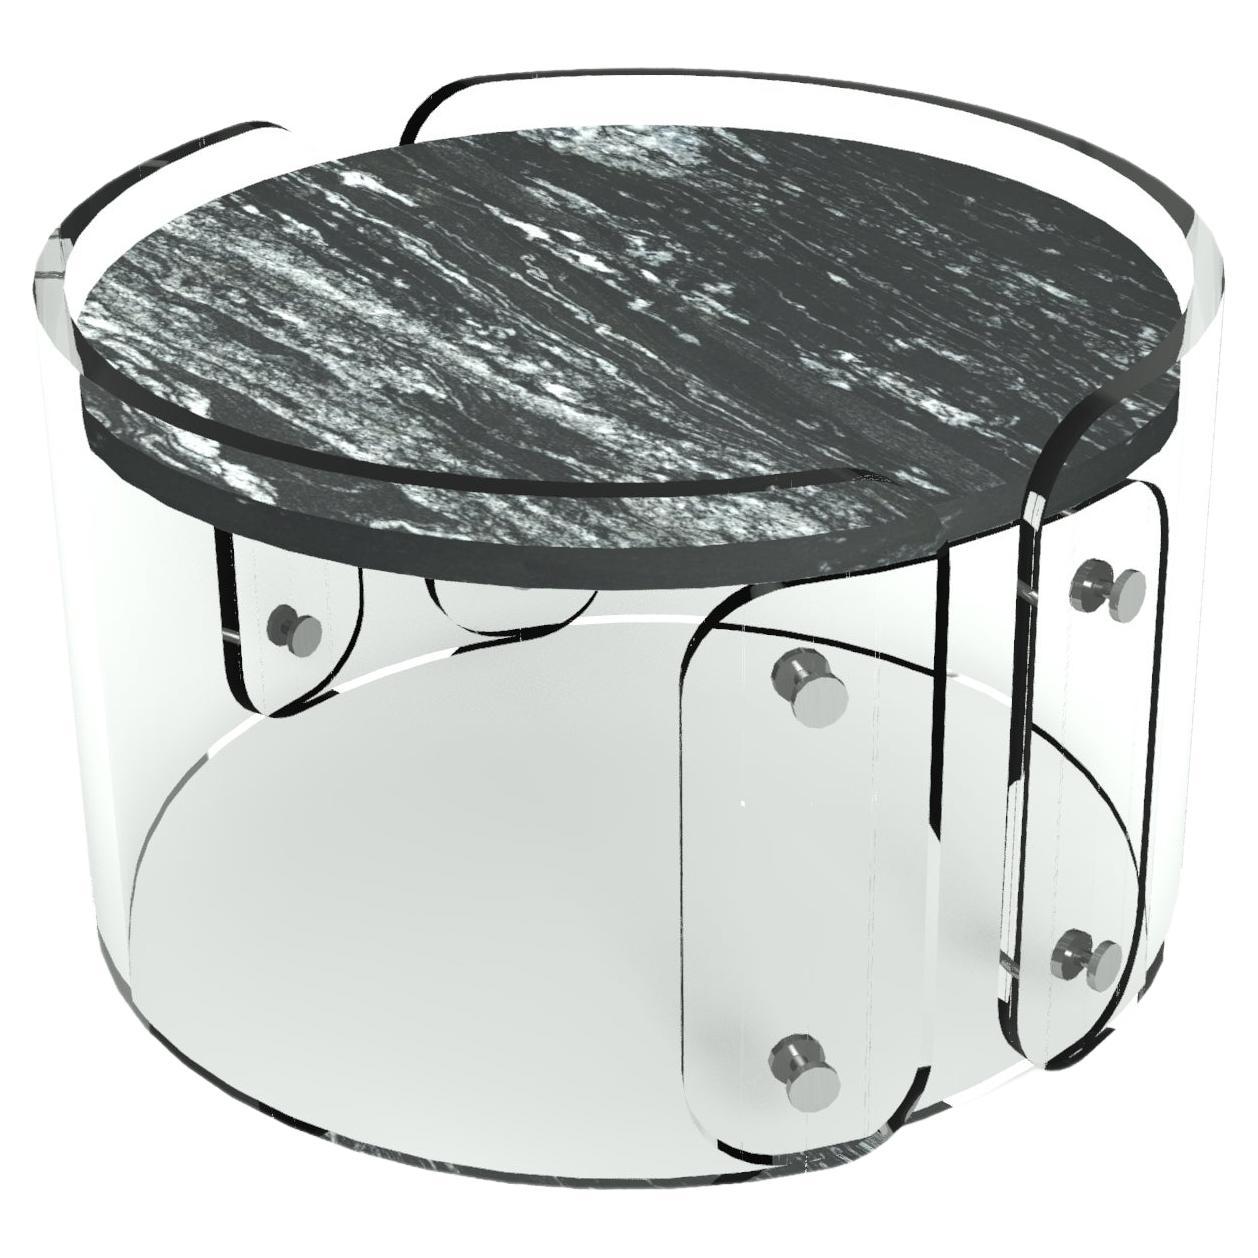 LASSU' small coffee table, black beauty granite top. By Legame Italia For Sale